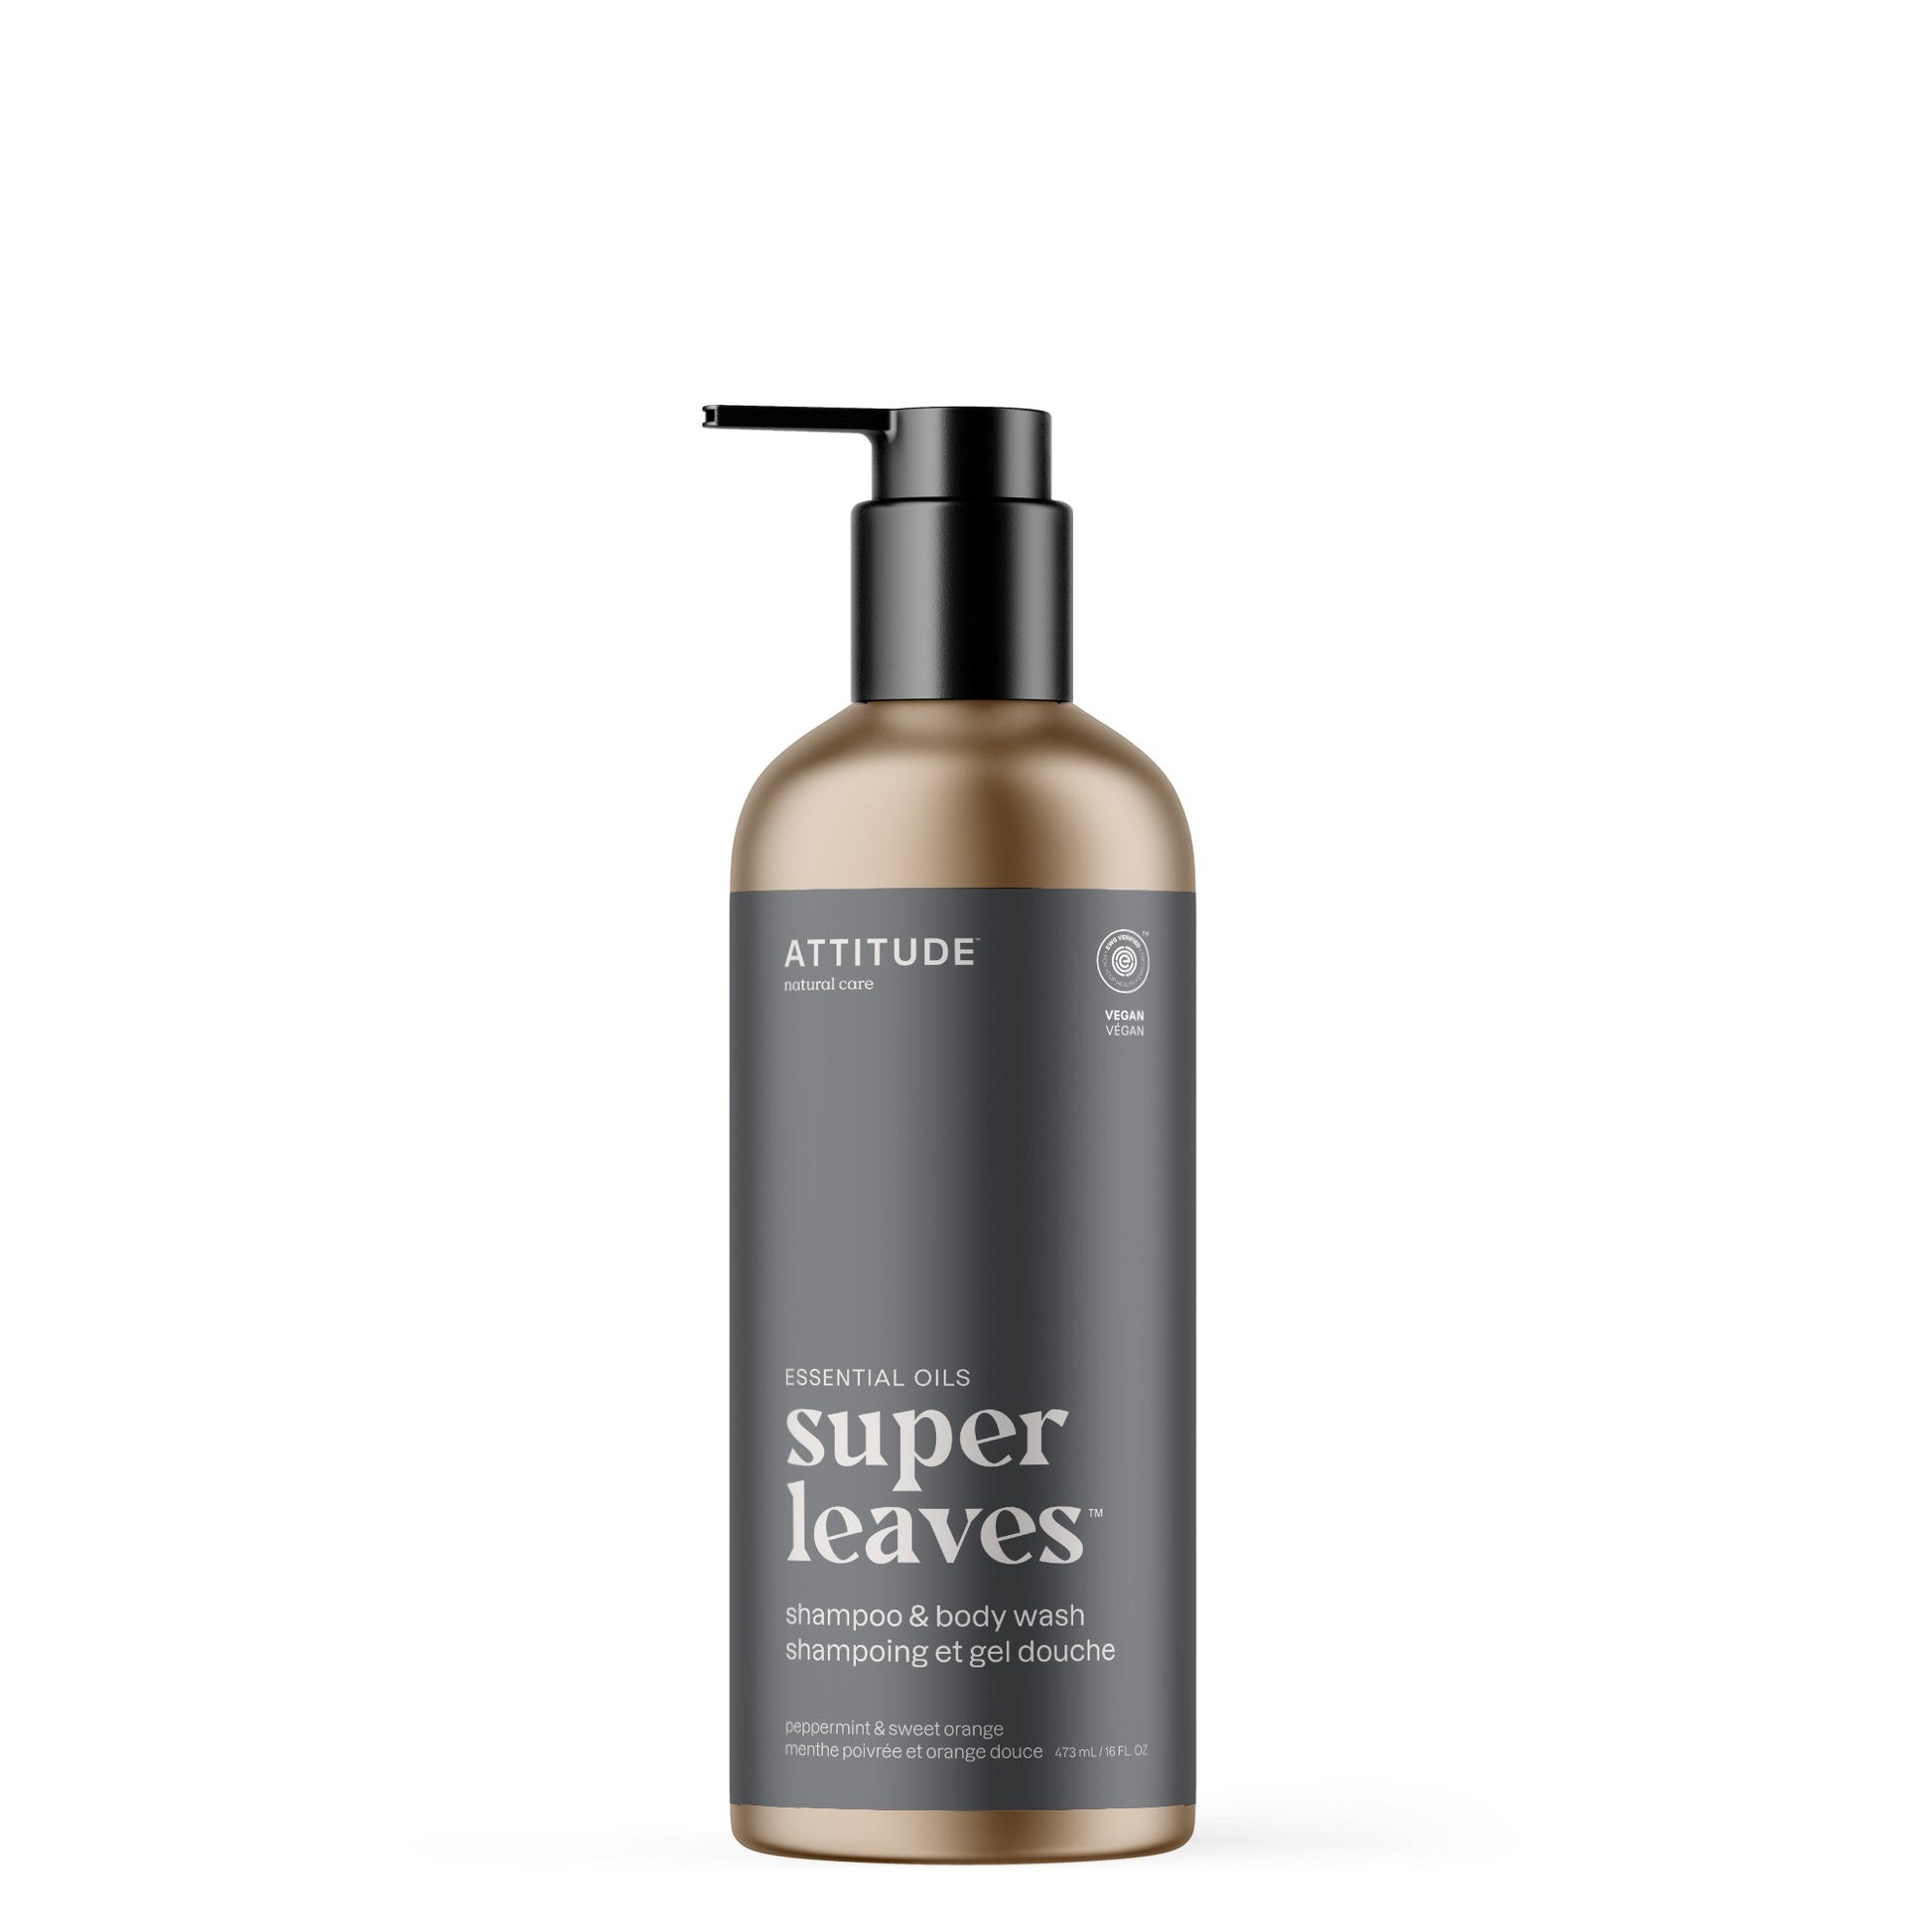 ATTITUDE Super Leaves Essential oil shampoo body wash Peppermint and sweet orange 19004-btob_en?_main? 16 FL. OZ.